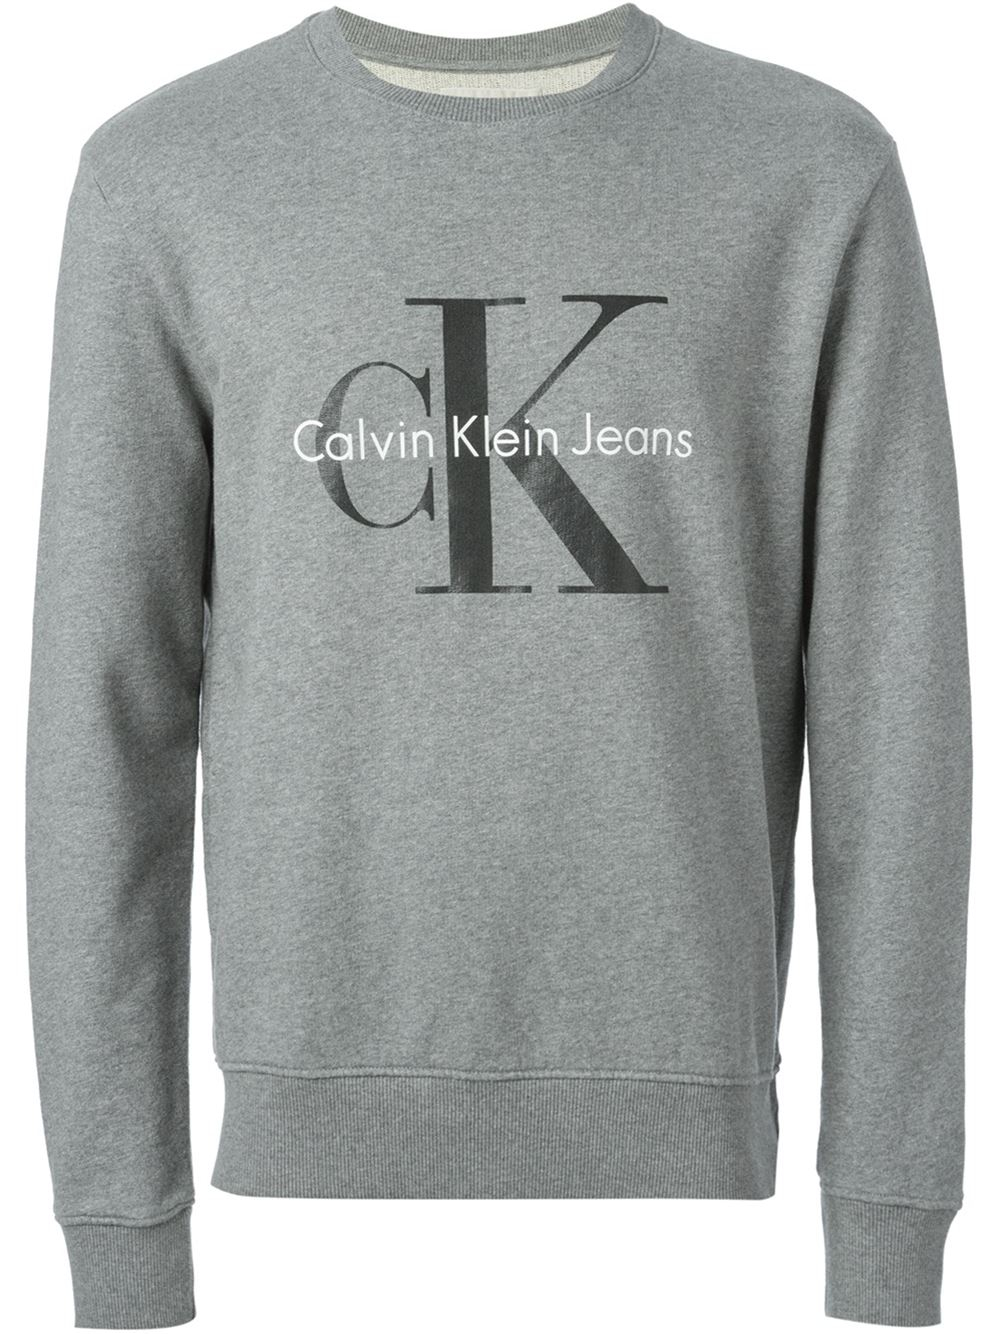 Calvin klein jeans Crew Neck Sweatshirt in Gray for Men (grey) | Lyst